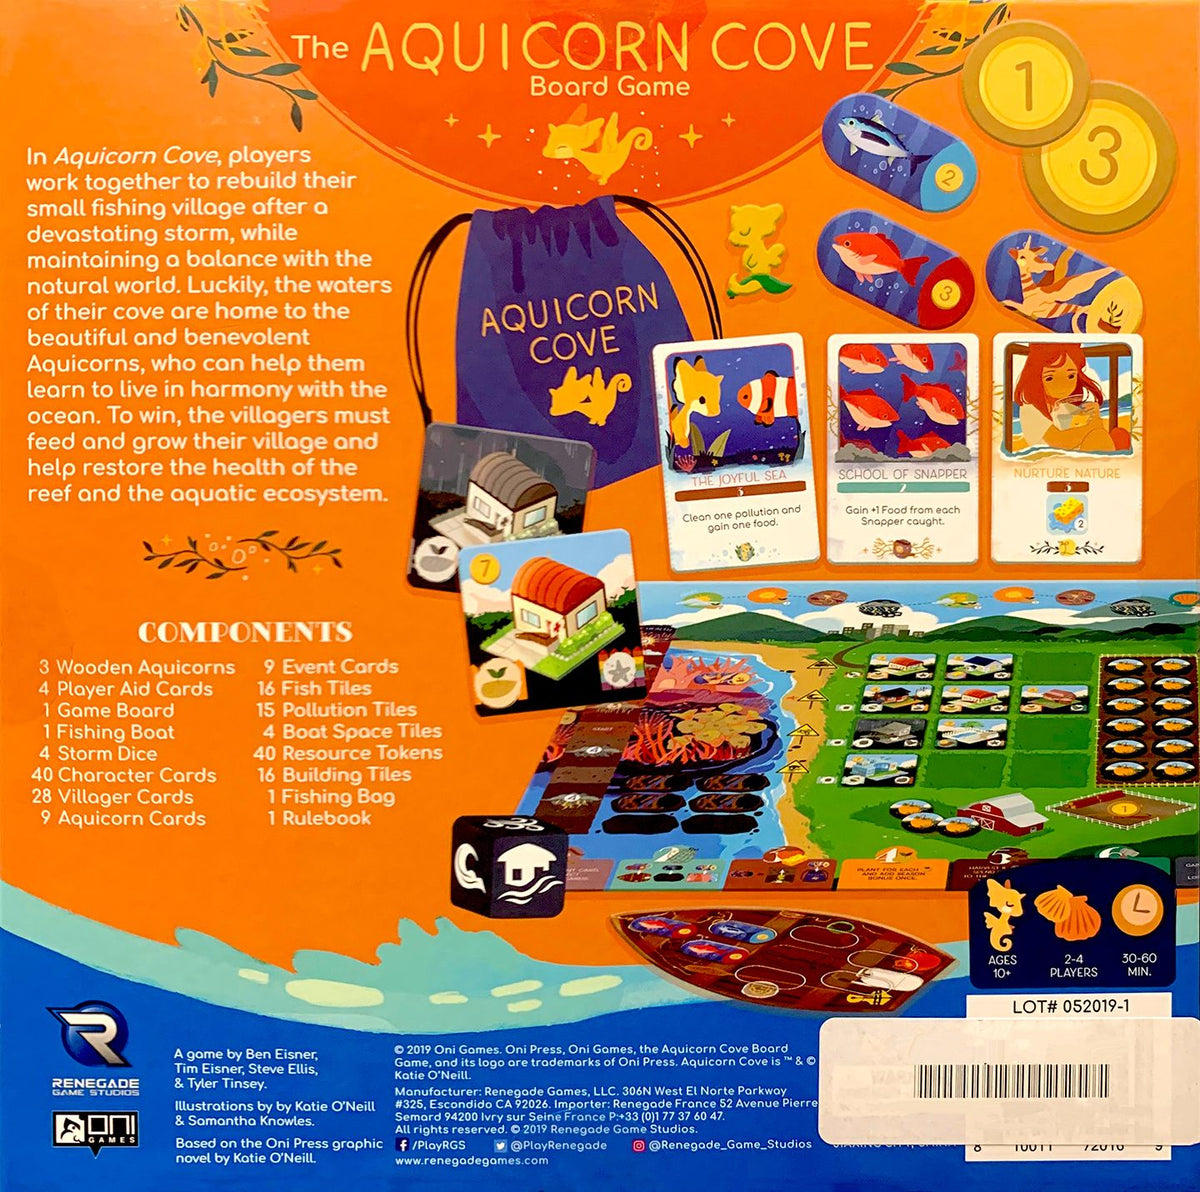 The Aquicorn Cove Board Game